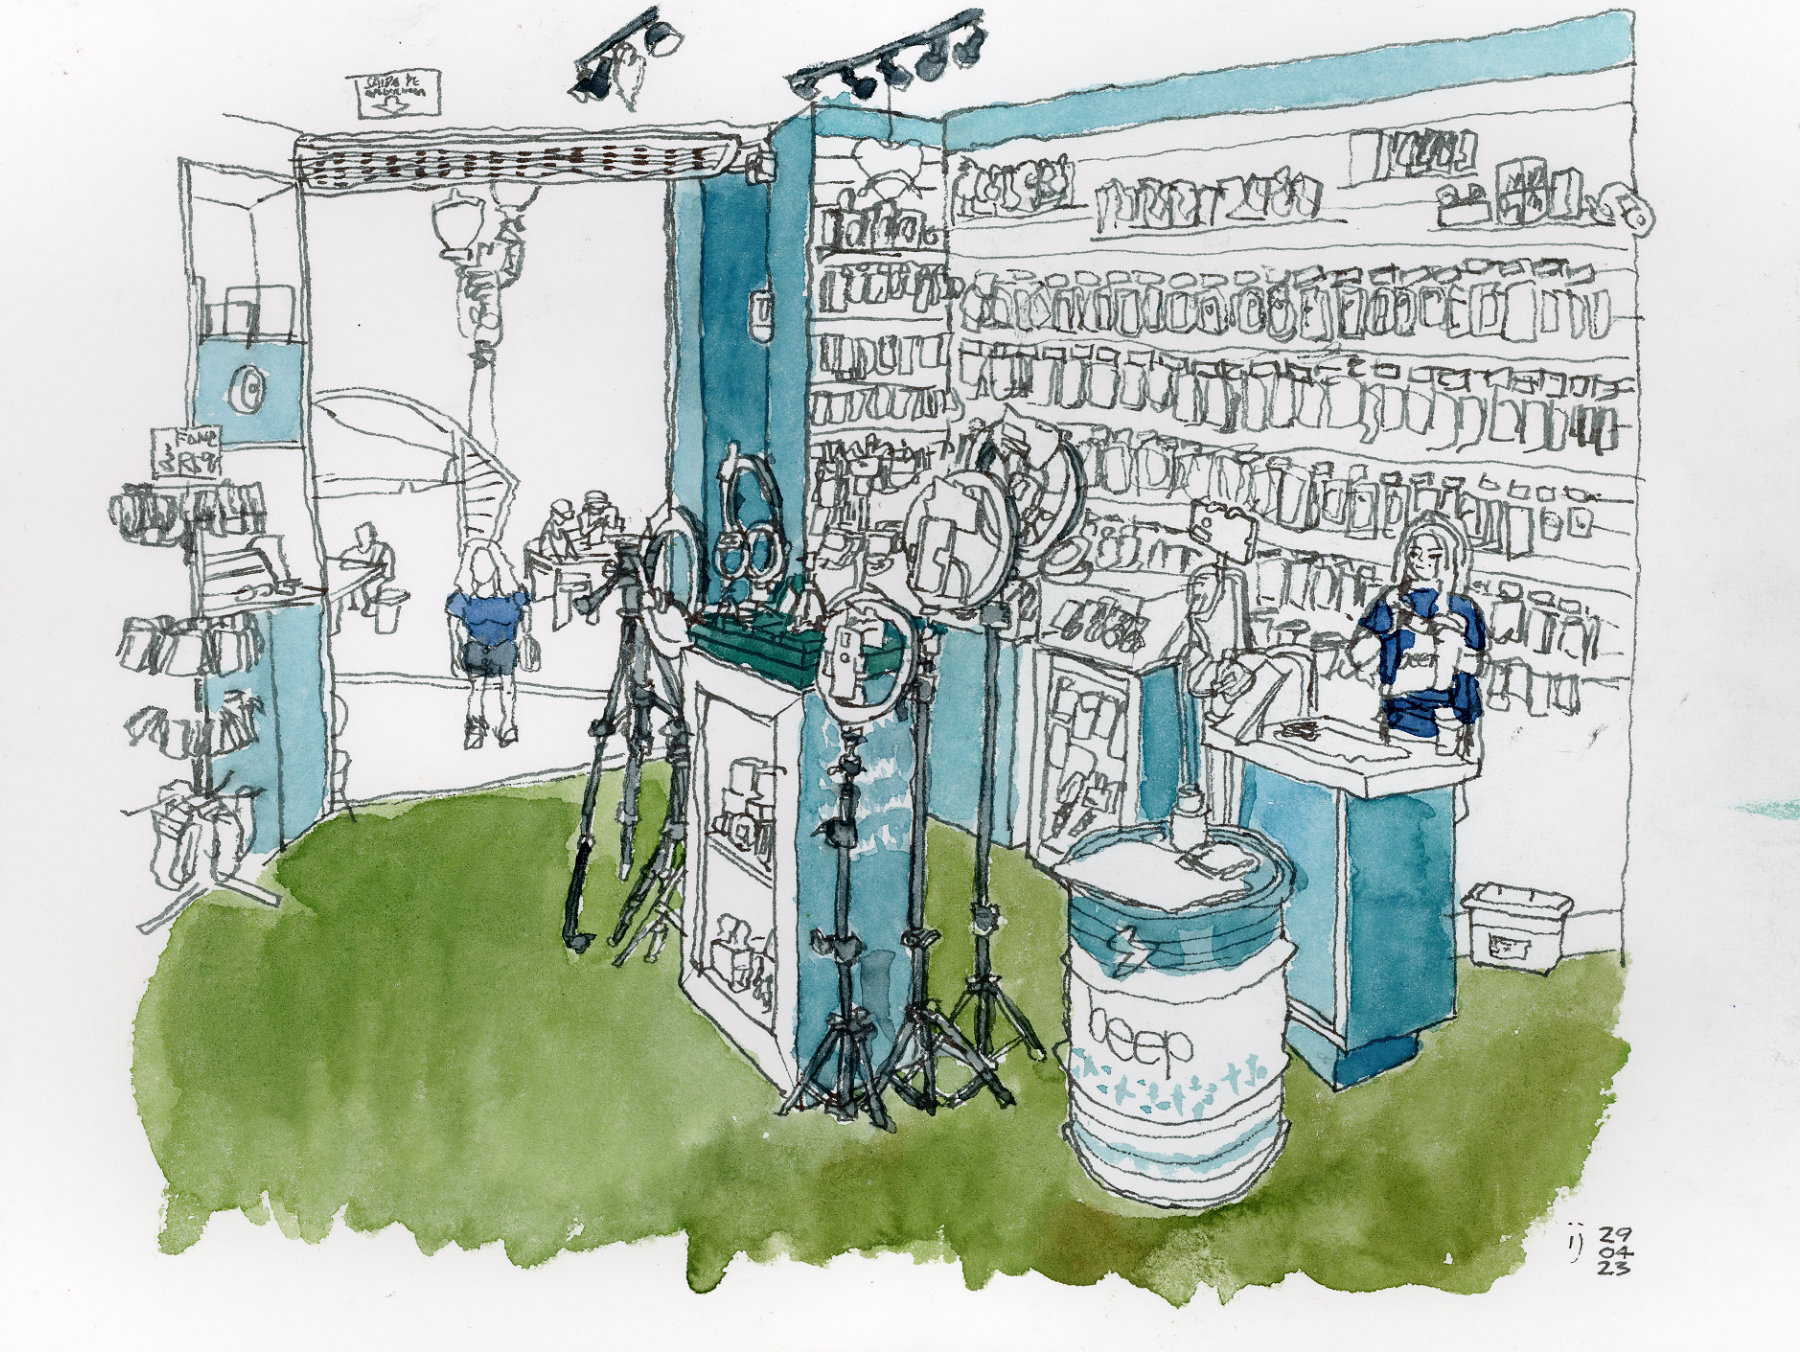 Desenho a traço com detalhes em aquarela mostrando o interior de uma loja de acessórios de celulares abarrotada de produtos